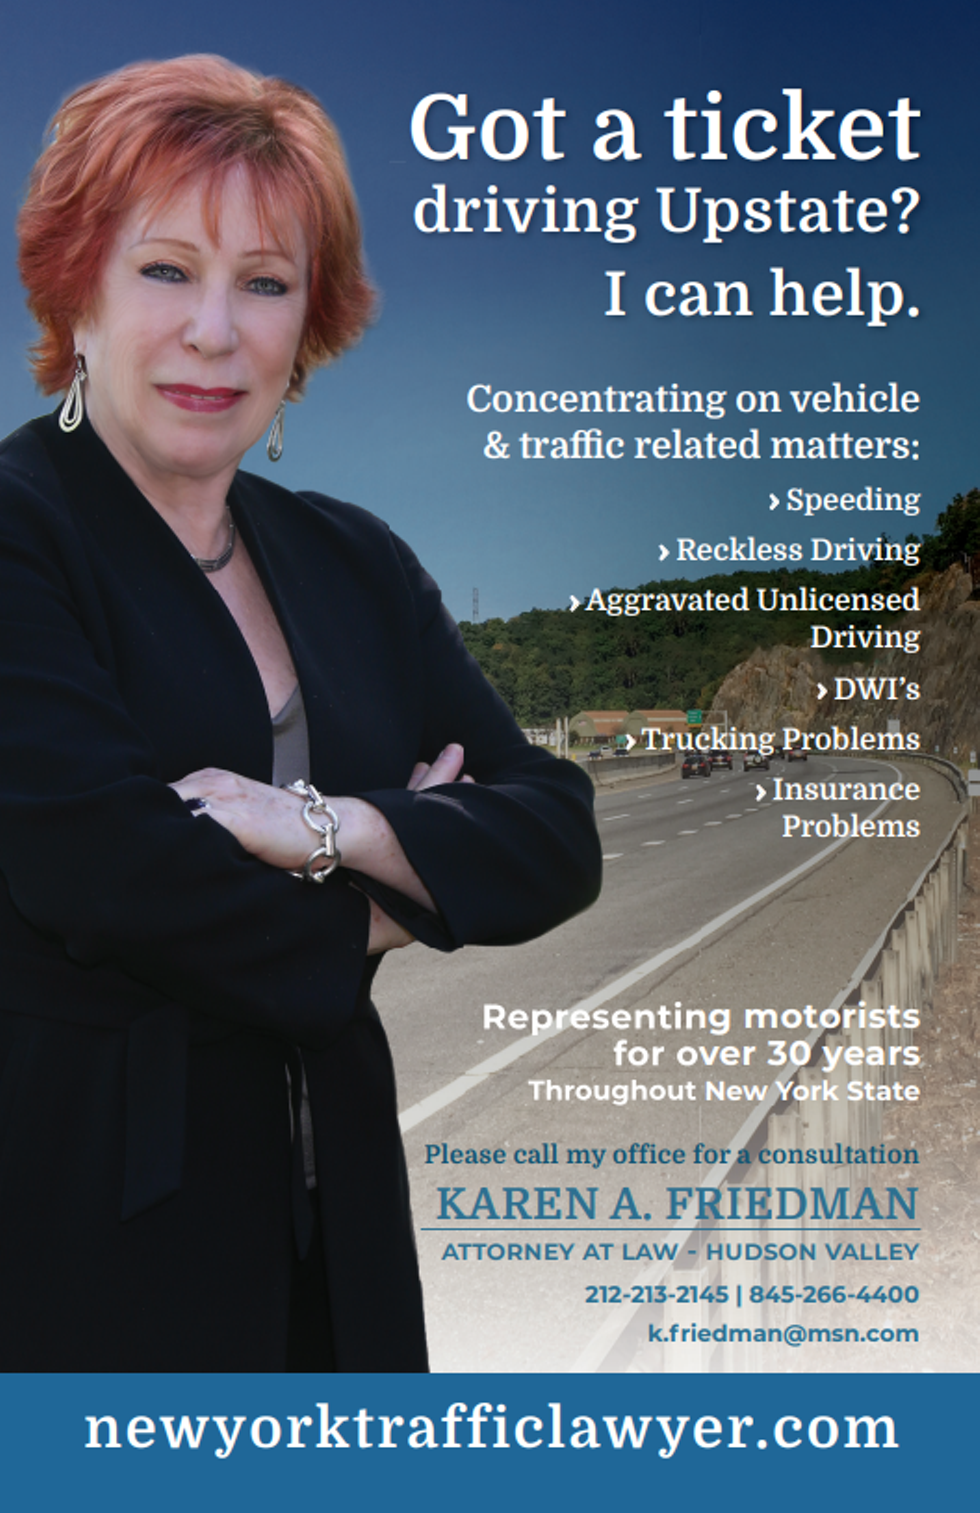 Karen A. Friedman New York Traffic Lawyer